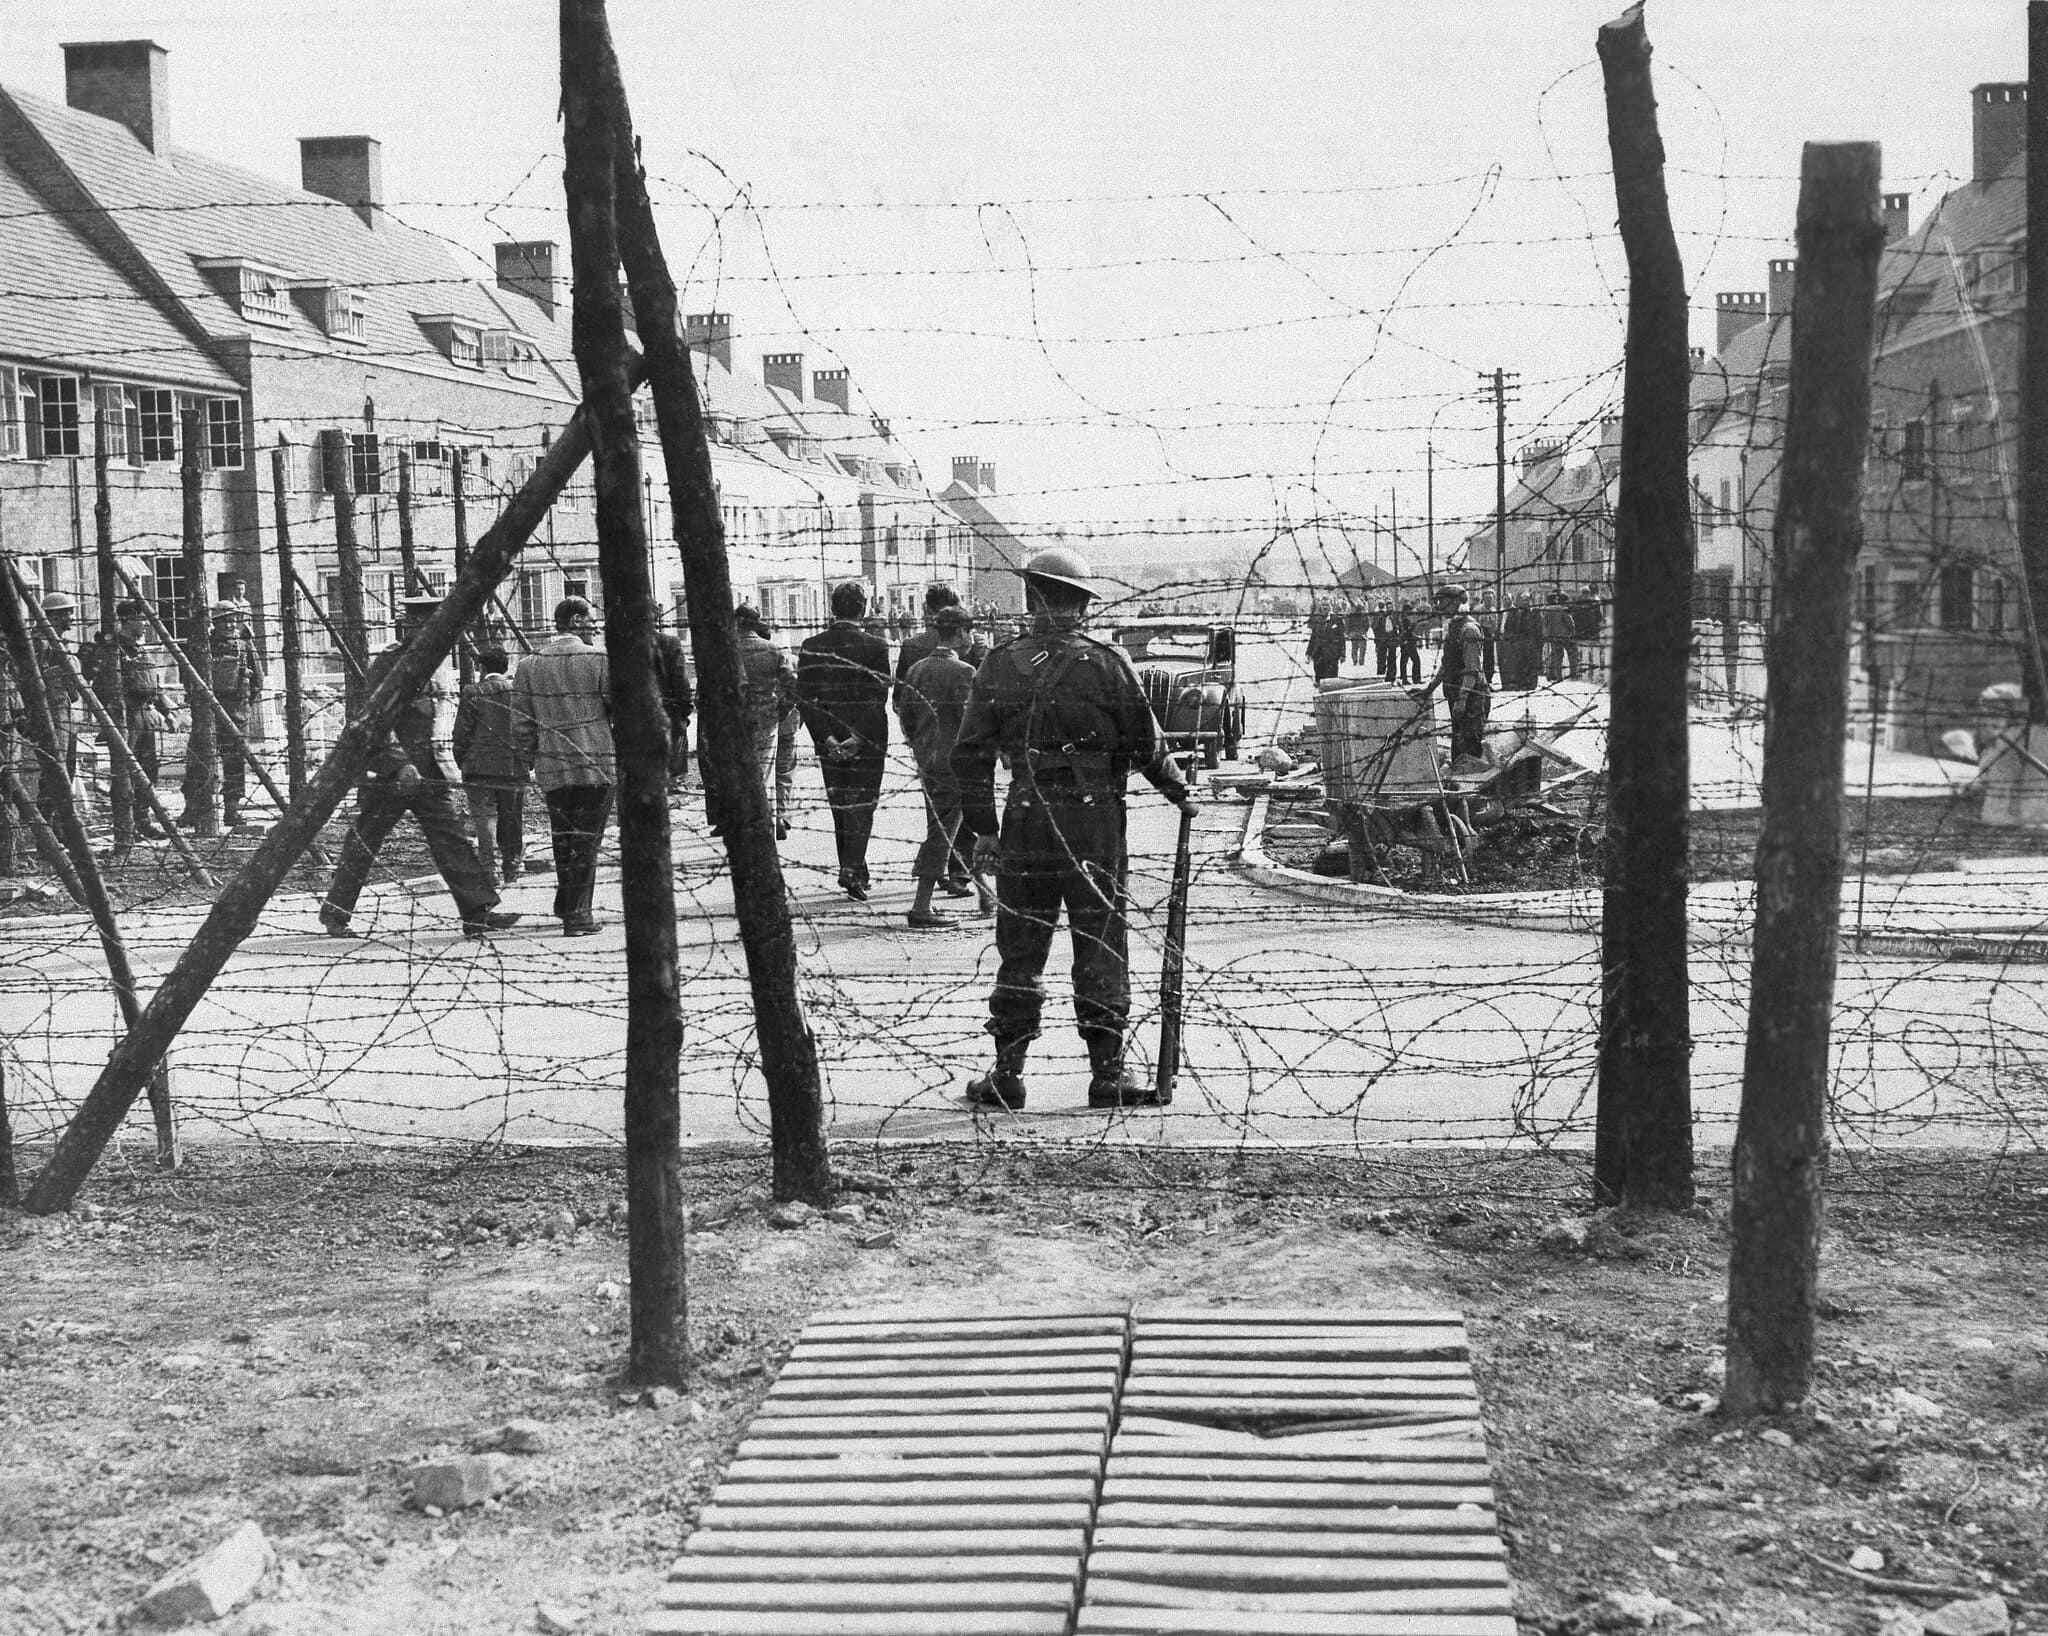 שומרים בריטים חמושים משגיחים על האסירים במחנה מעצר, 2 ביוני 1940 (צילום: AP Photo)